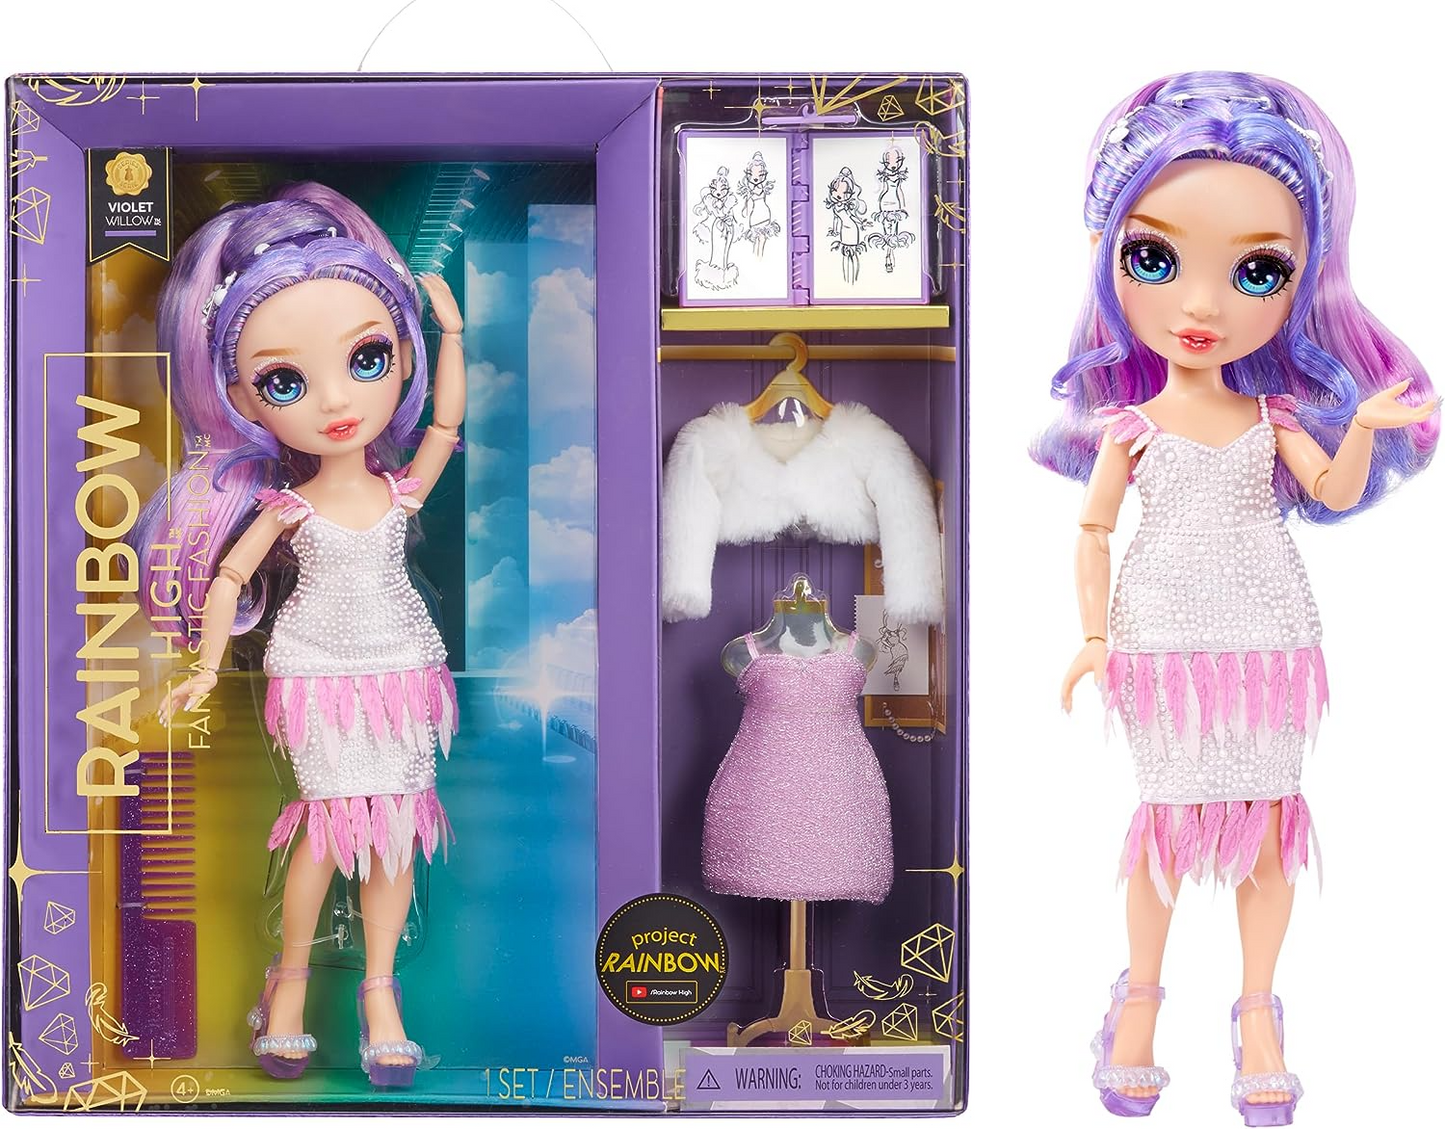 Rainbow High Fantástica boneca fashion - VIOLET WILLOW - Boneca fashion roxa de 11" e conjunto de brinquedos com 2 roupas e acessórios de moda - Ótimo para crianças de 4 a 12 anos de idade